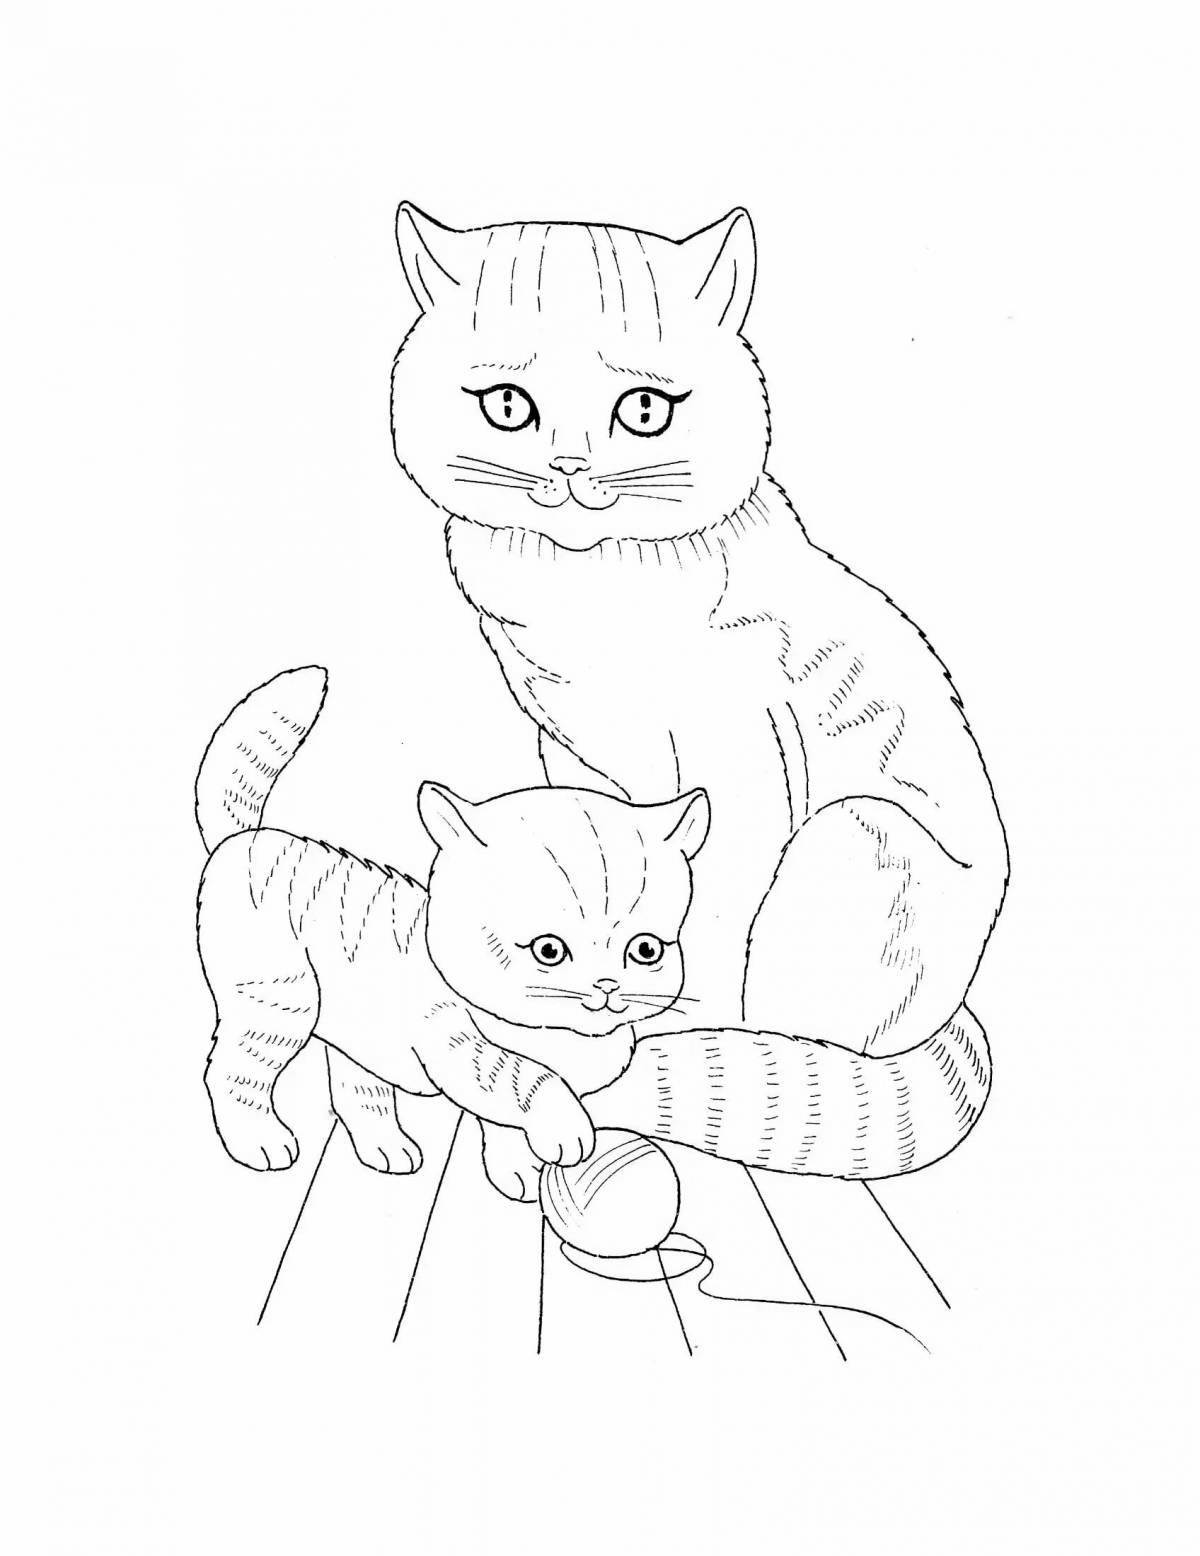 Сказочная раскраска рисунок кошки